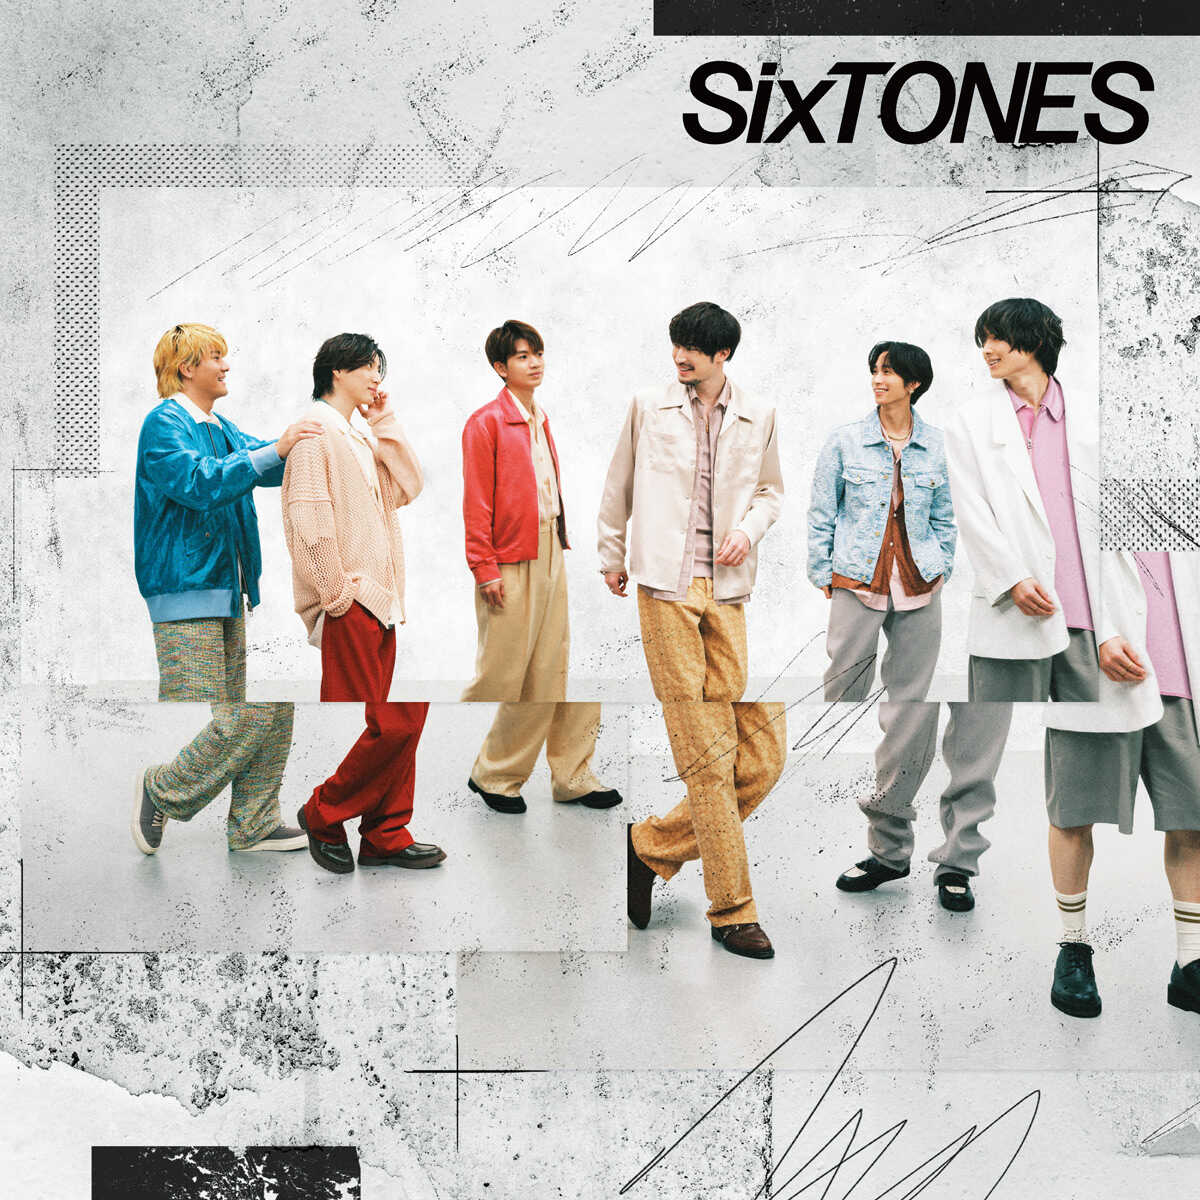 SixTONESのシングル「音色」がオリコン週間合算シングルランキングで首位。通算11作目